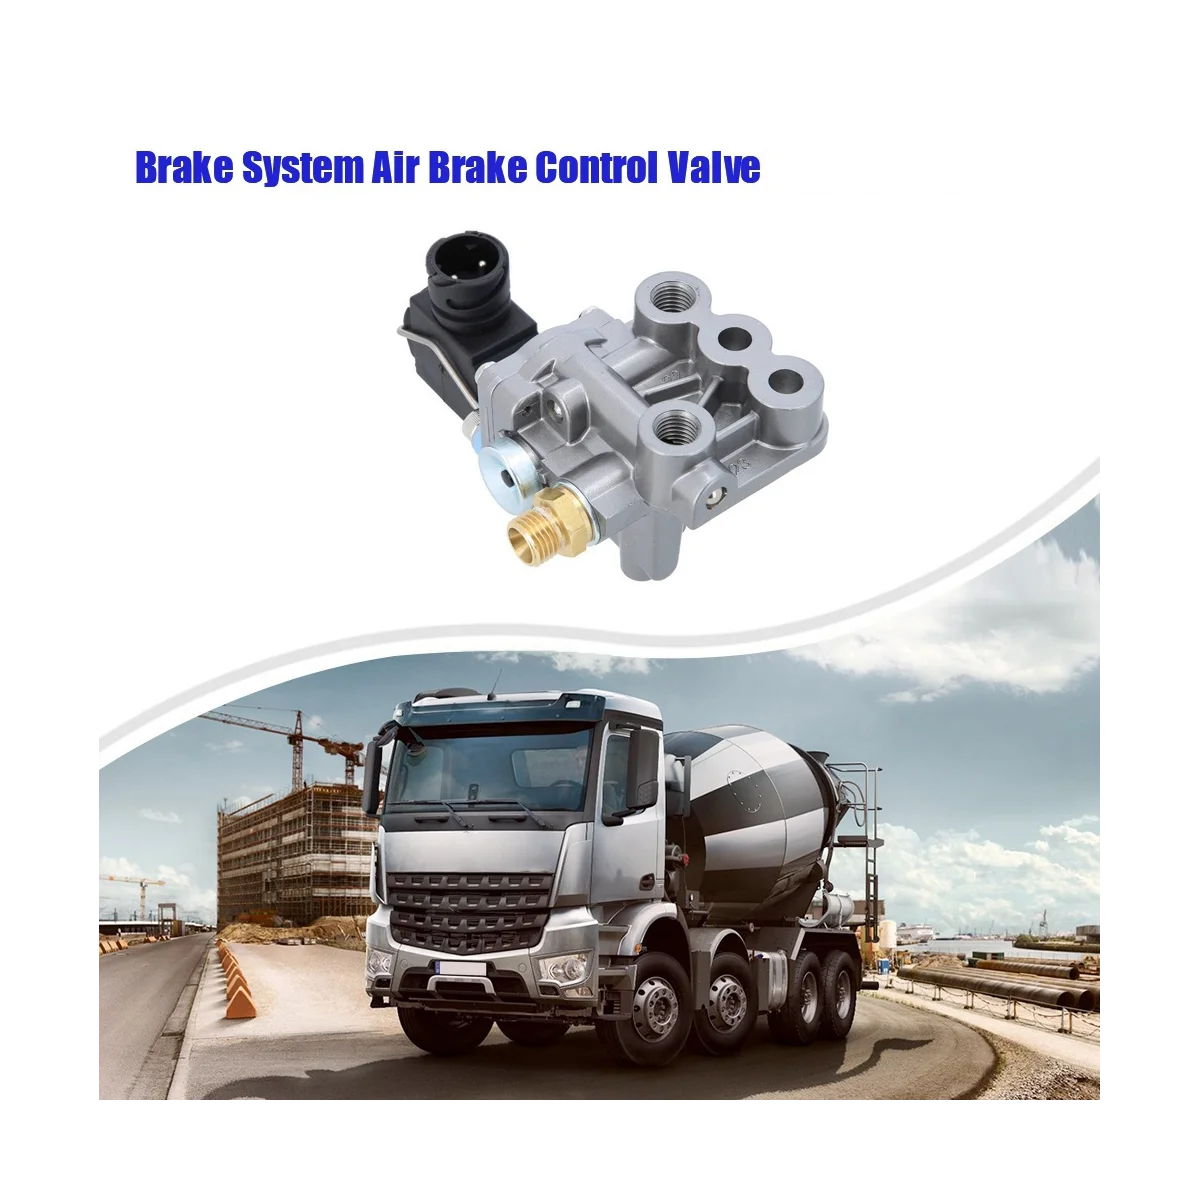 

5410500370 Автомобильная тормозная система, воздушный тормозной клапан управления для BENZ, грузовик, электромагнитный клапан